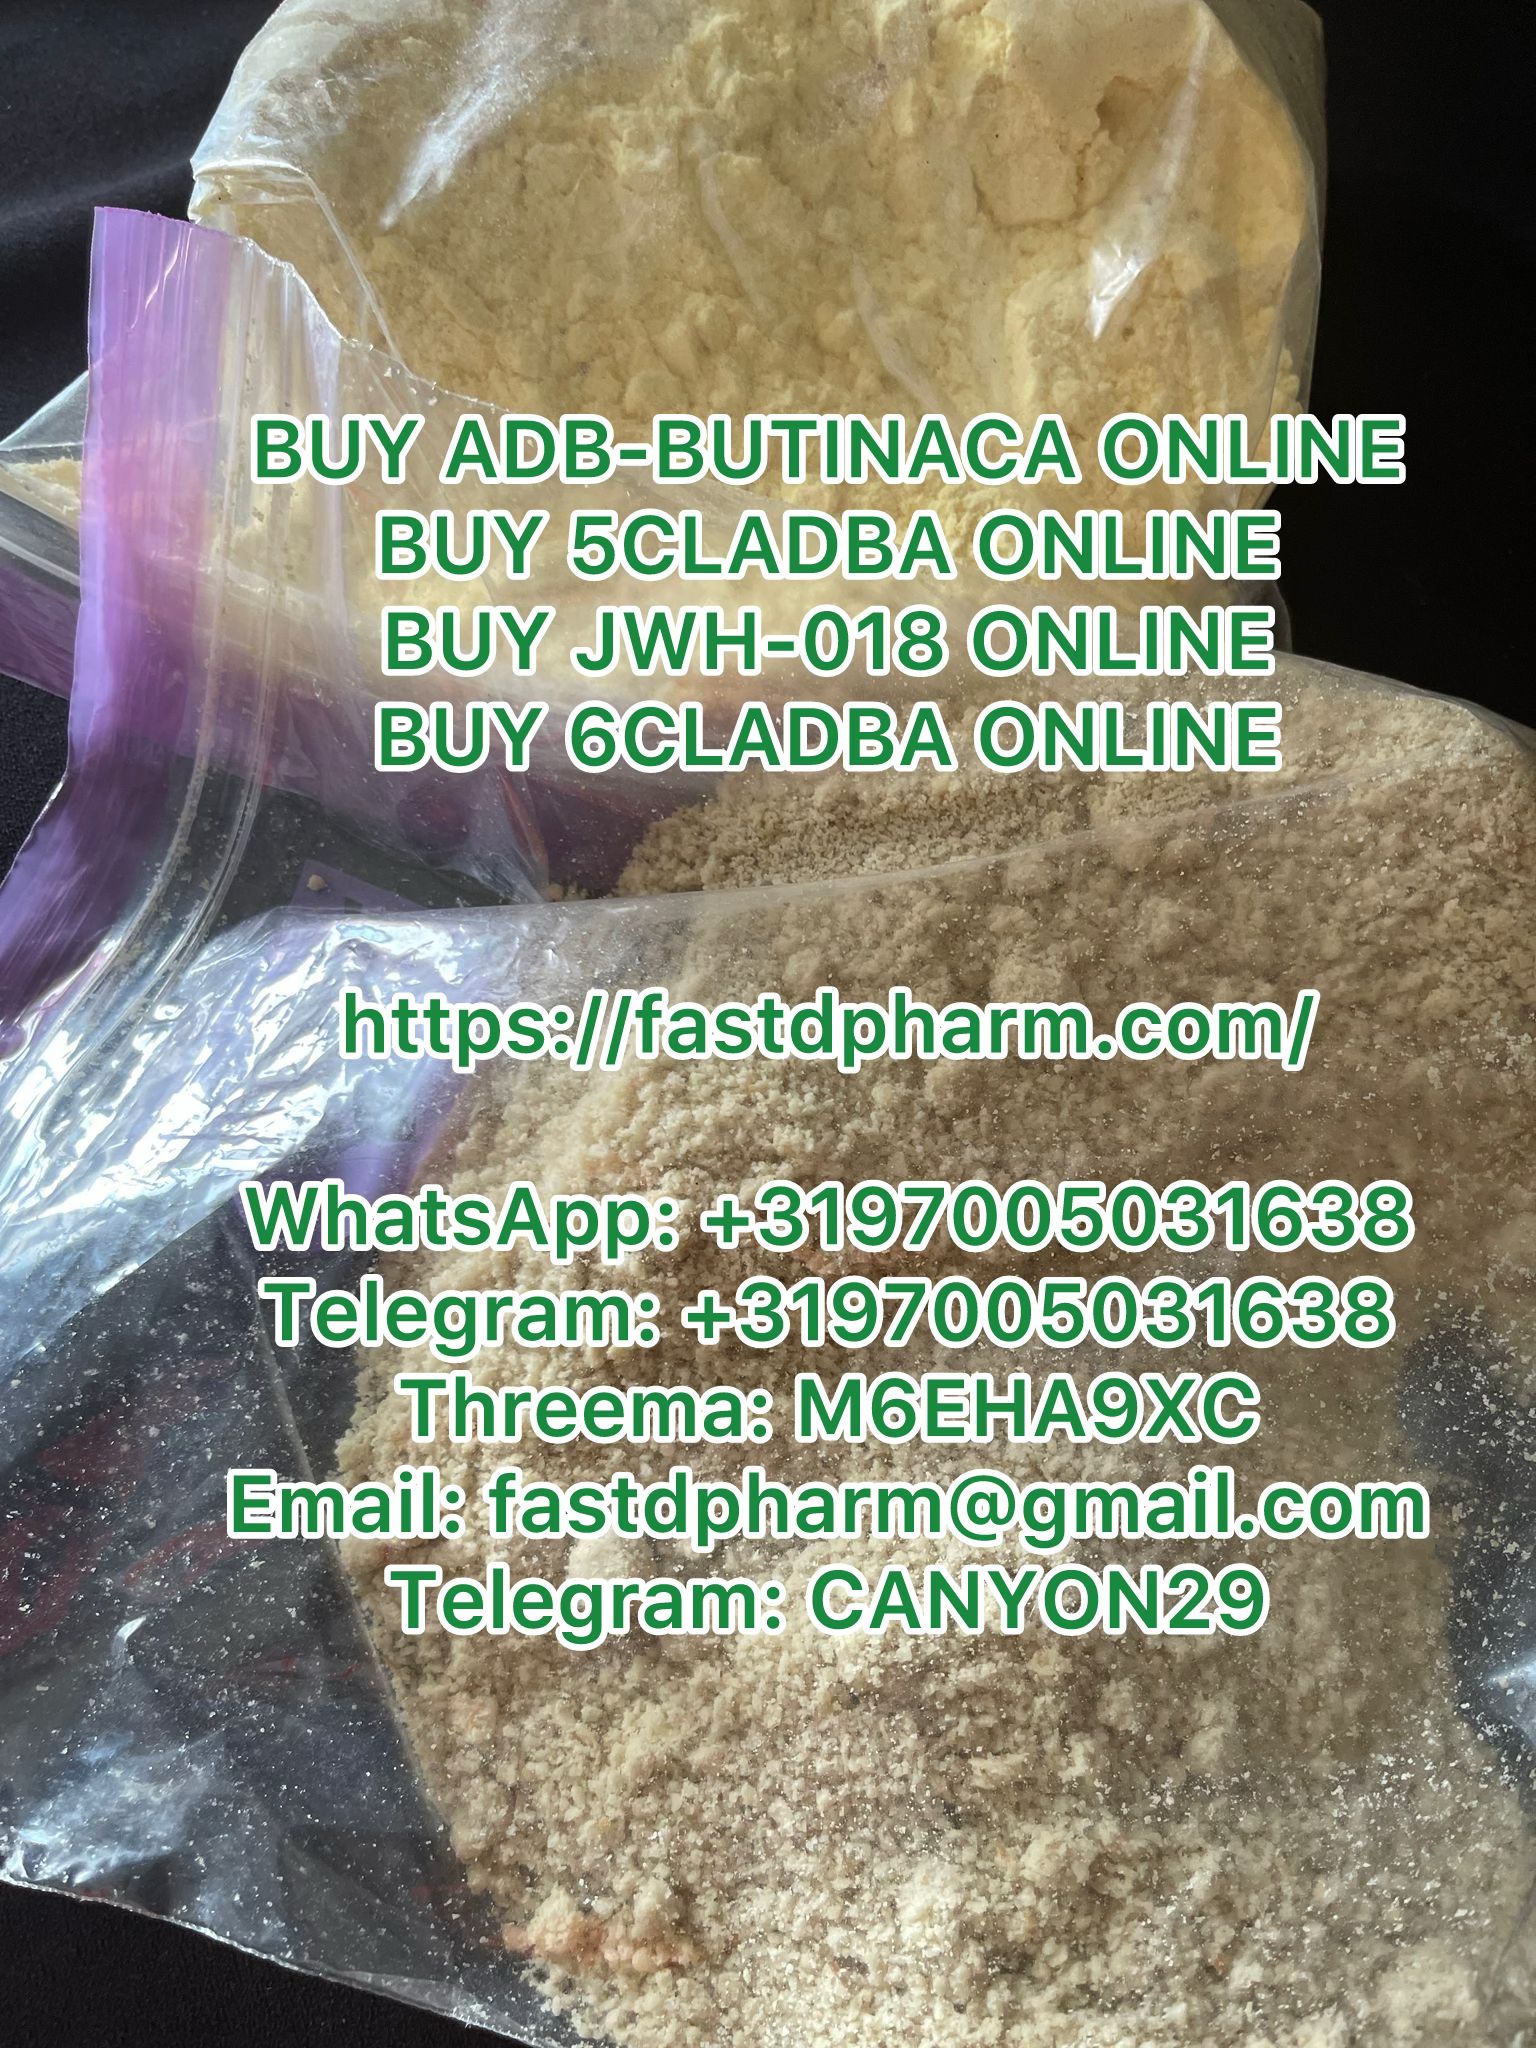 adb-butinaca-for-sale-online-buy-adb-butinaca-online-whatsapp-3197005031638-telegram-3197005031638-113357